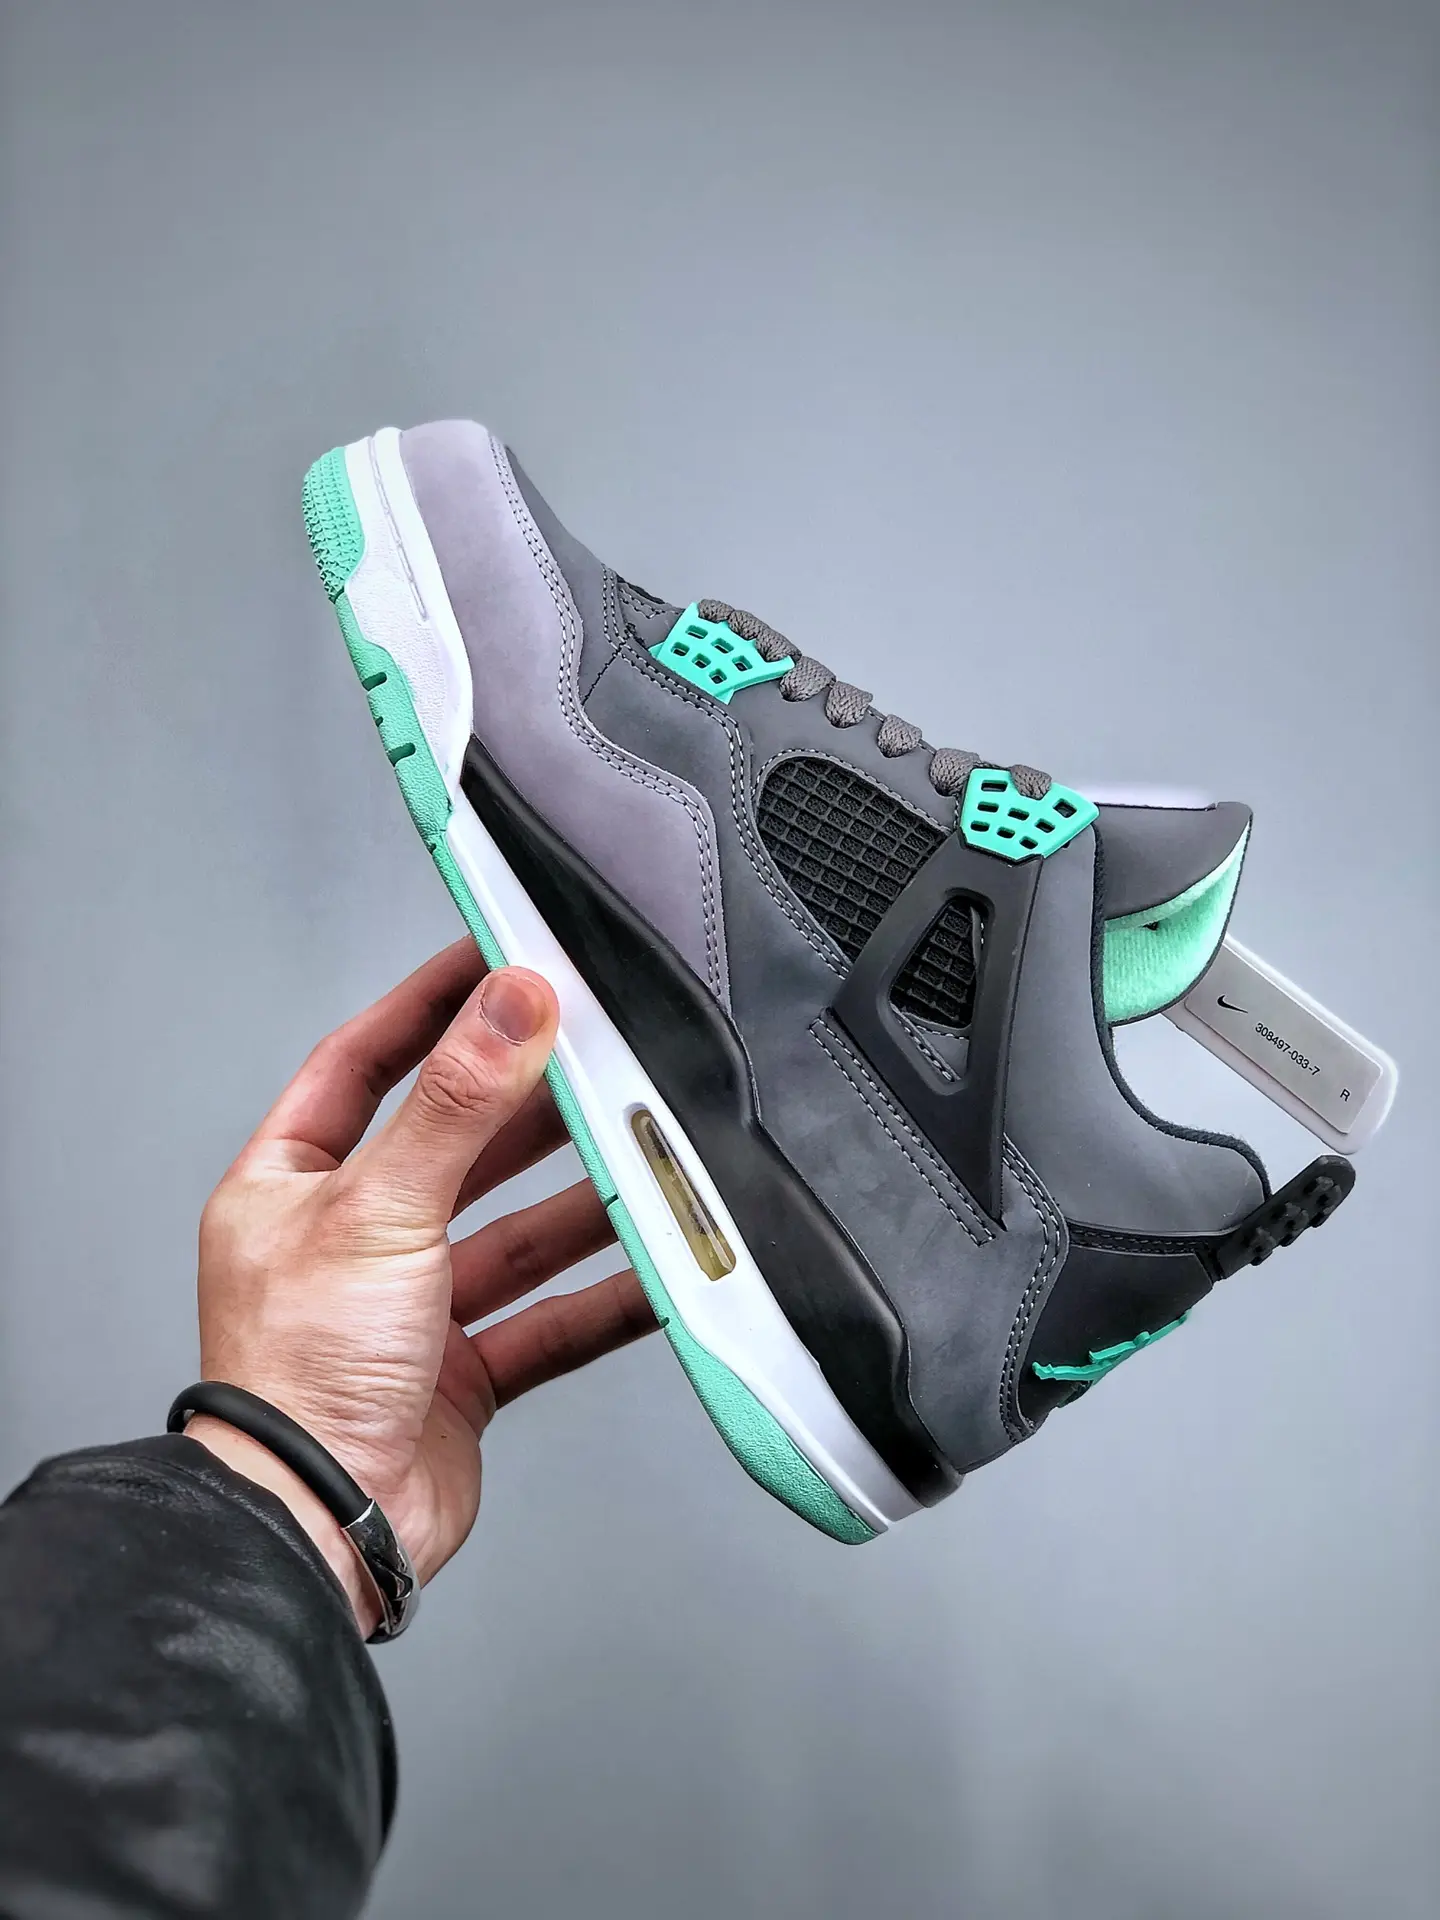 YASSW | Air Jordan 4 Retro Green Glow Sneakers Review